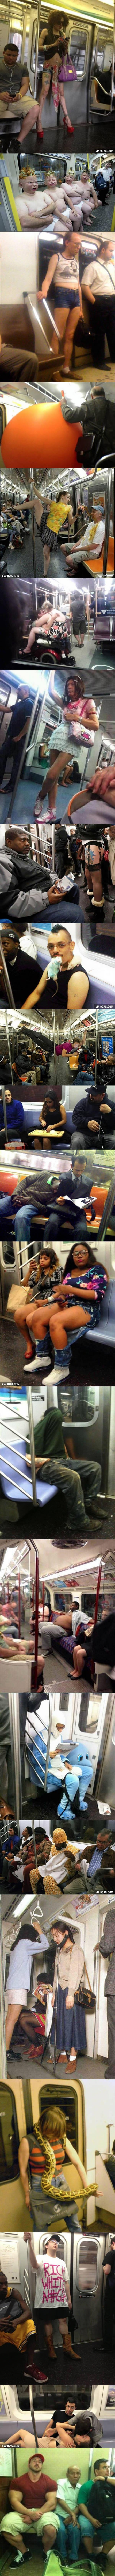 20 фотографий, которые докажут вам в метро нужно быть готовым ко всему